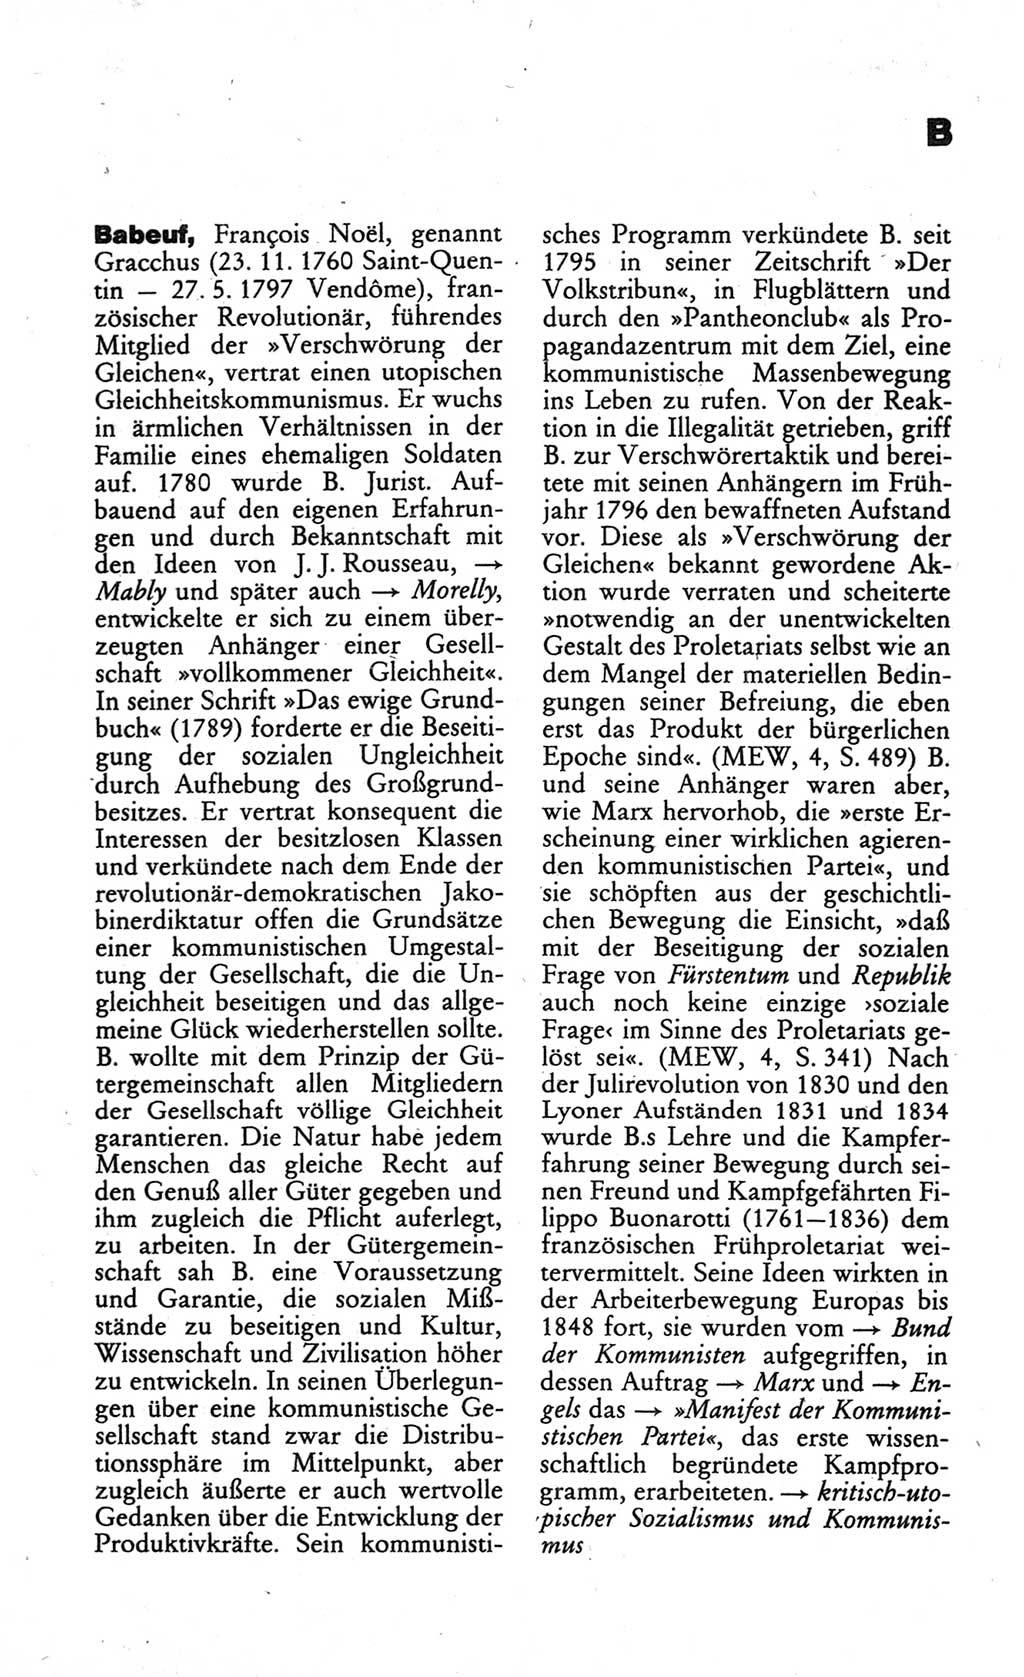 Wörterbuch des wissenschaftlichen Kommunismus [Deutsche Demokratische Republik (DDR)] 1984, Seite 49 (Wb. wiss. Komm. DDR 1984, S. 49)